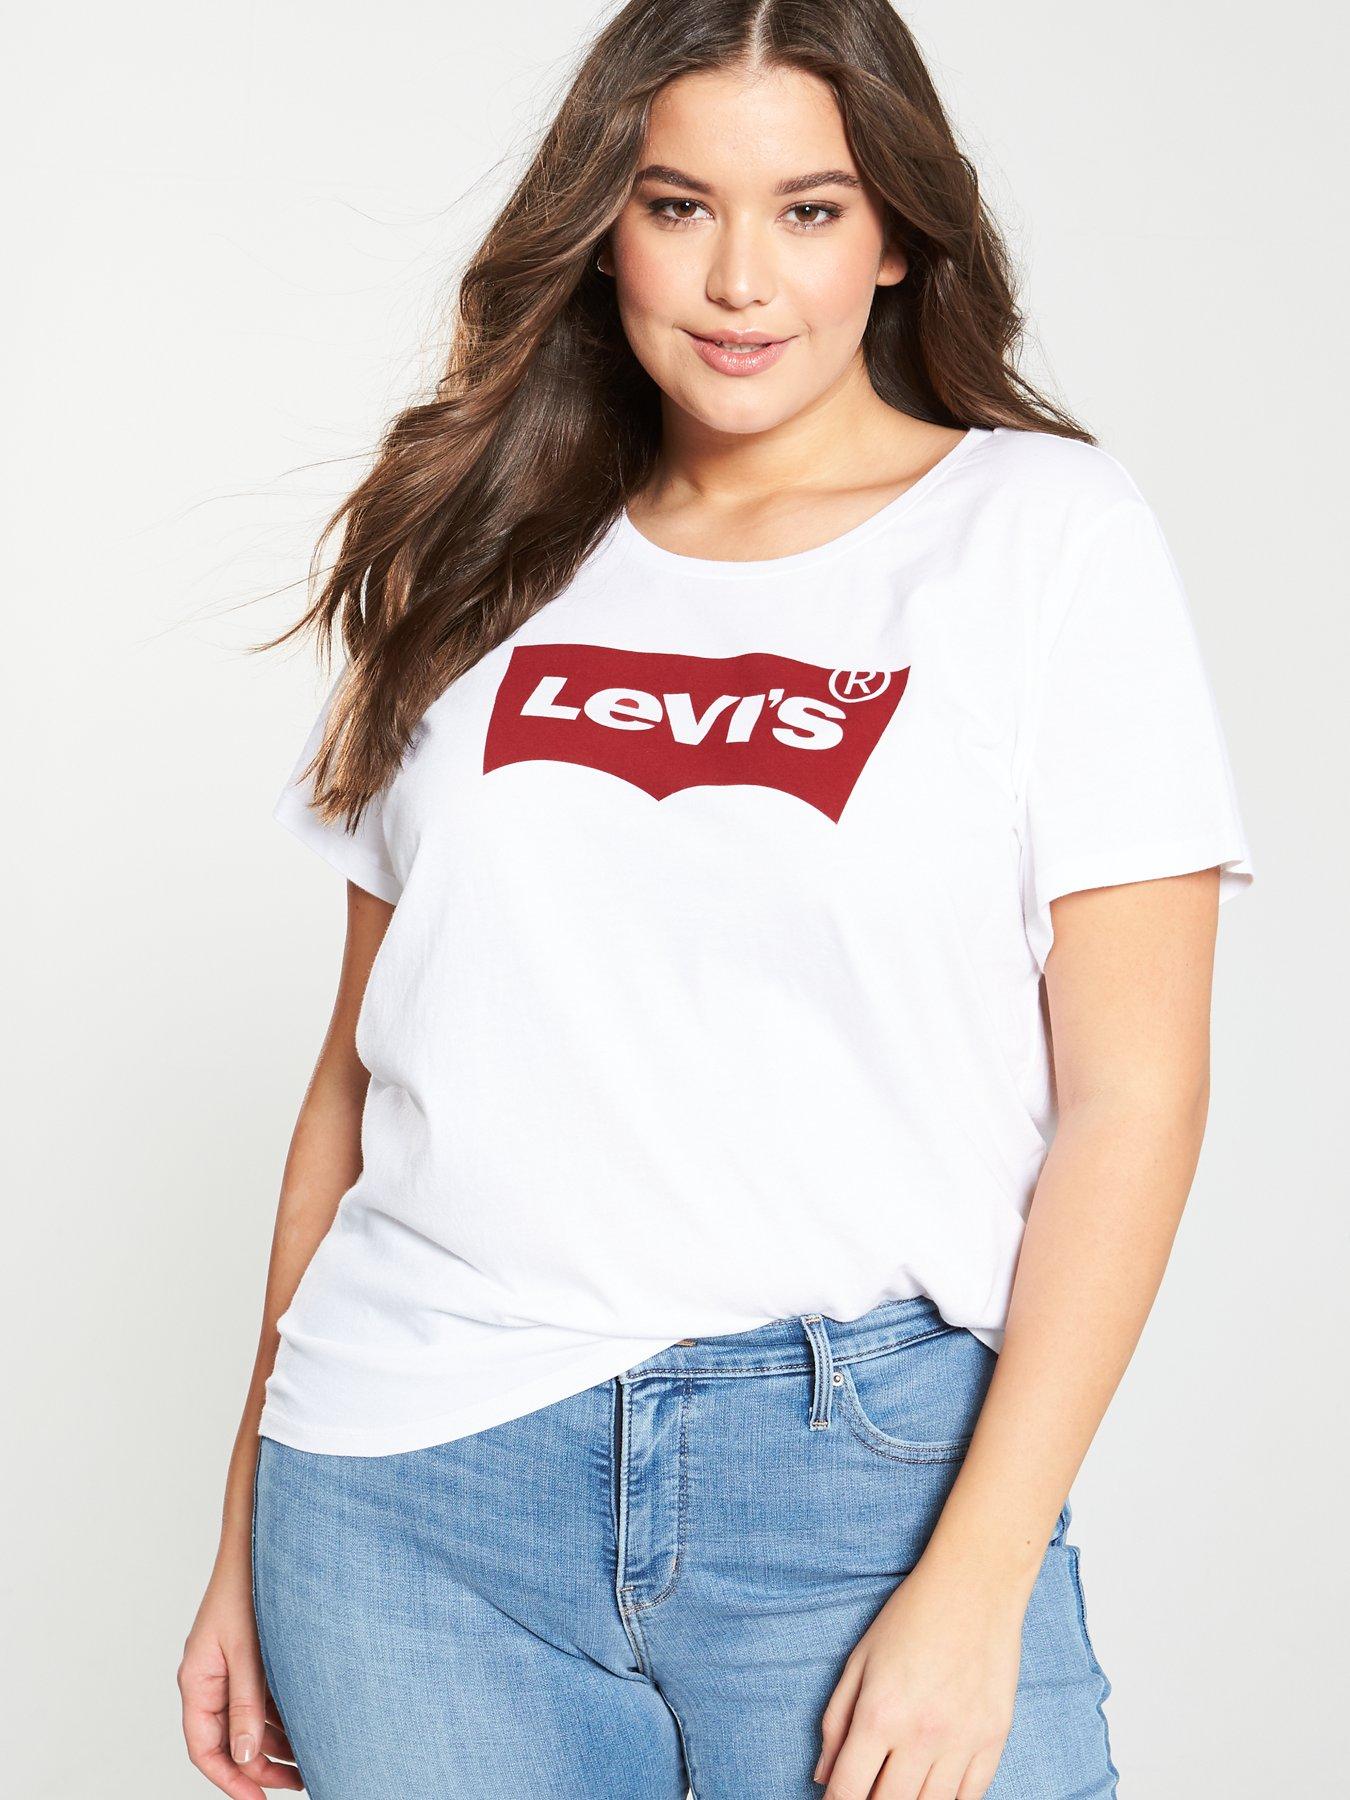 levis tshirt white